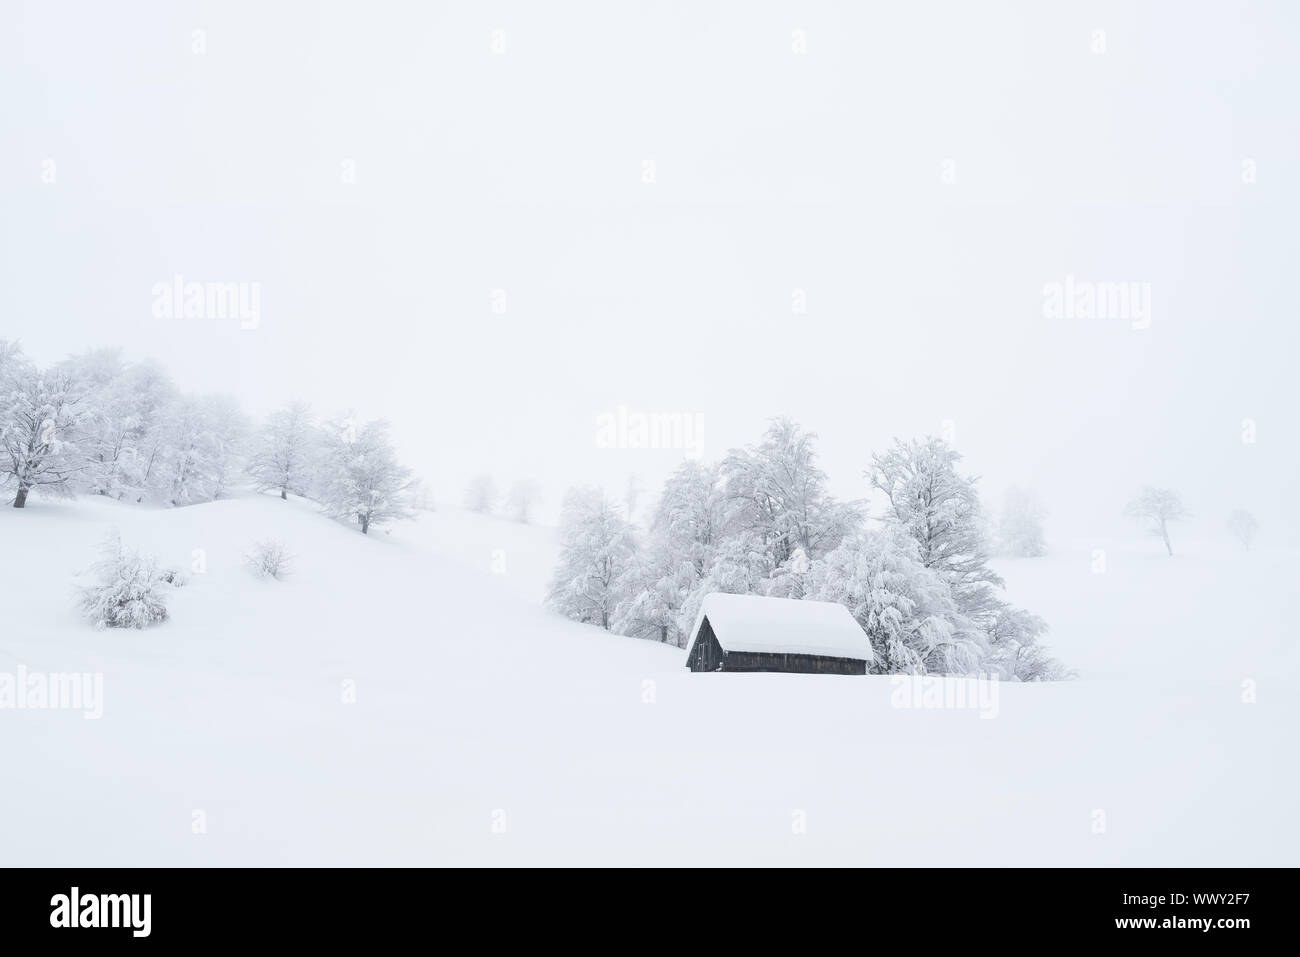 Paysage d'hiver avec une maison en bois dans la neige. Neige et brouillard dans un village de montagne. La vie privée dans un lieu naturel isolé Banque D'Images